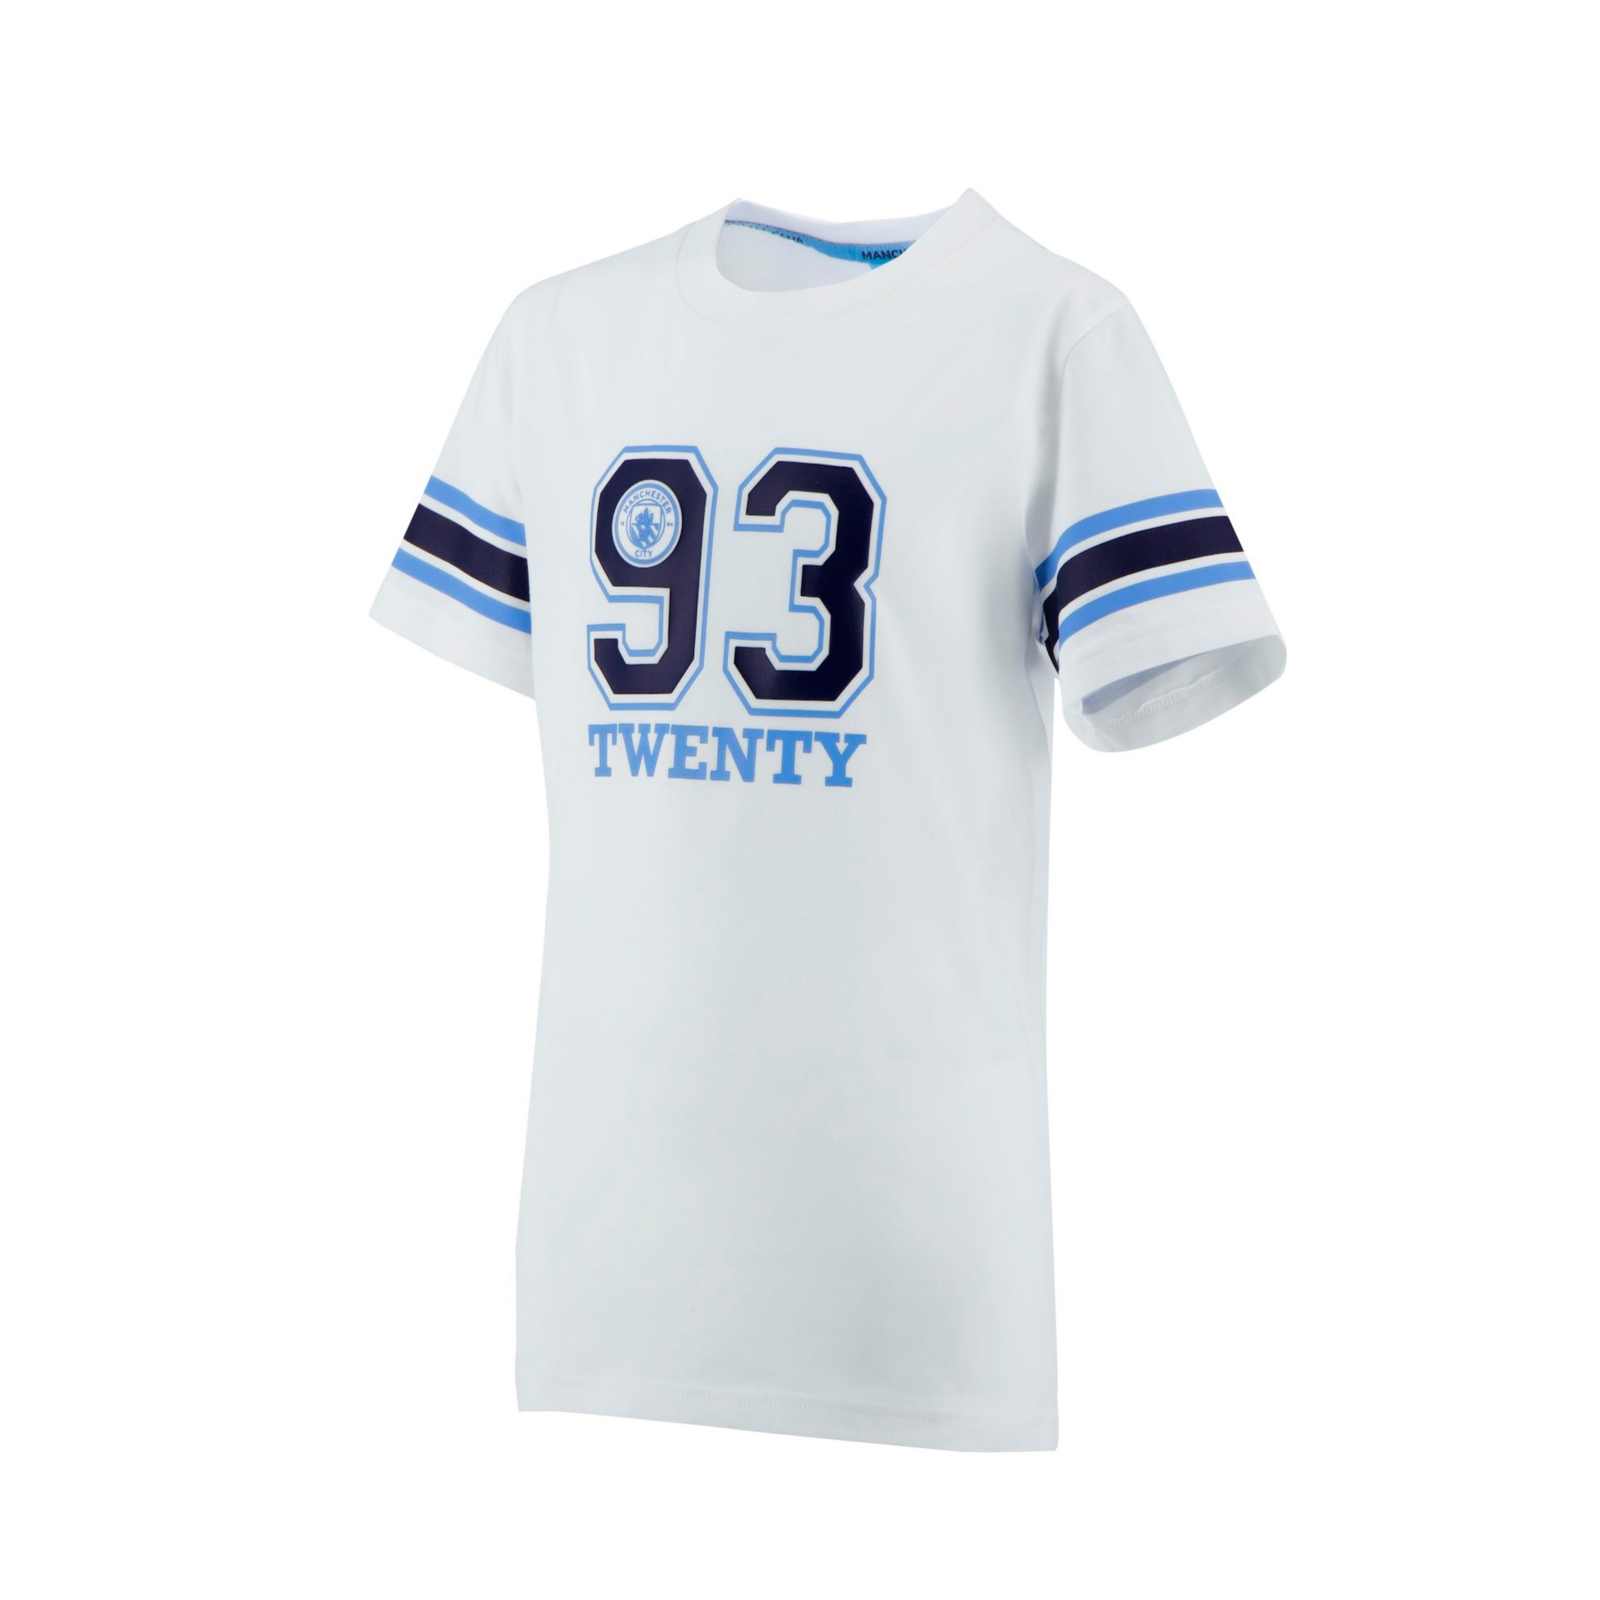 Oversized Official Man Jersey Baseball Shirt